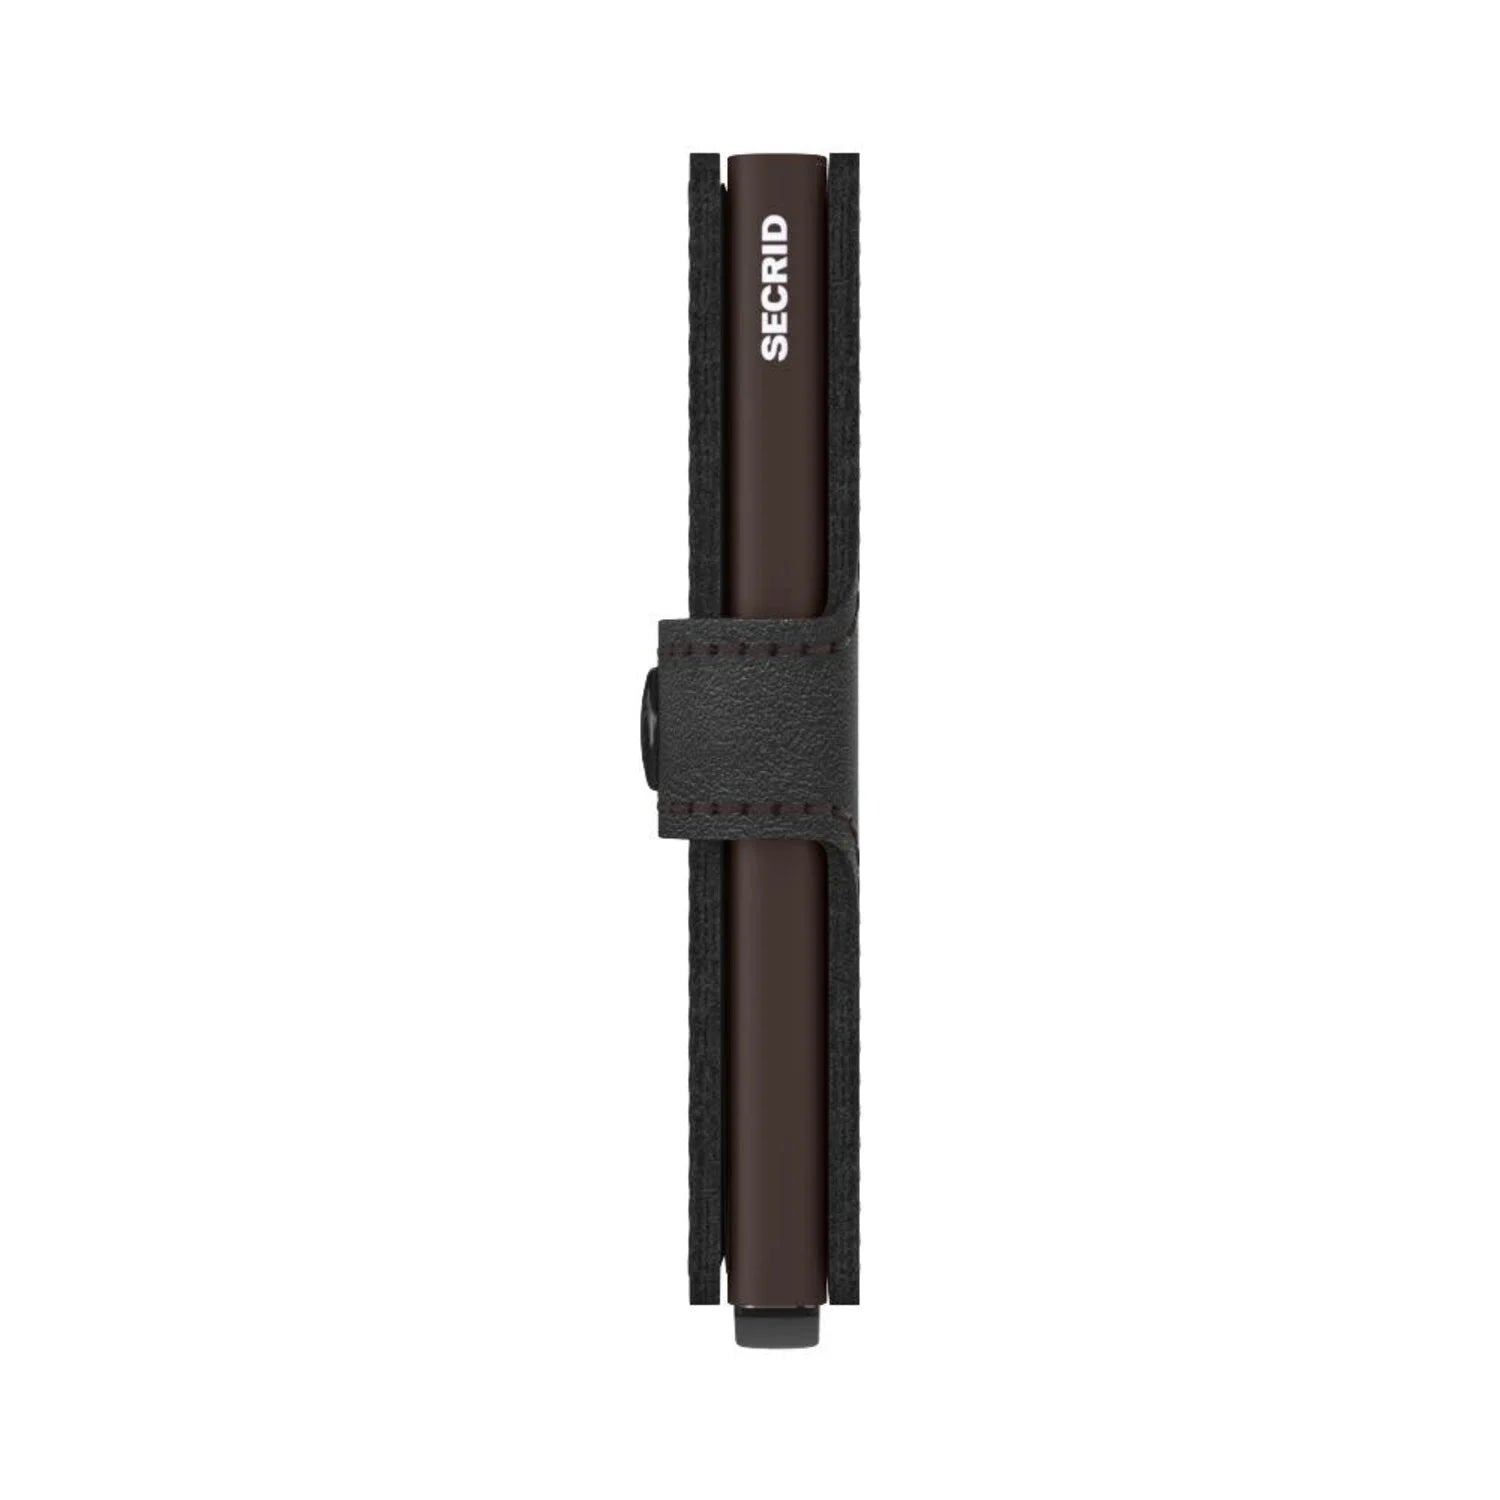 Secrid Miniwallet RFID Original Black-Brown